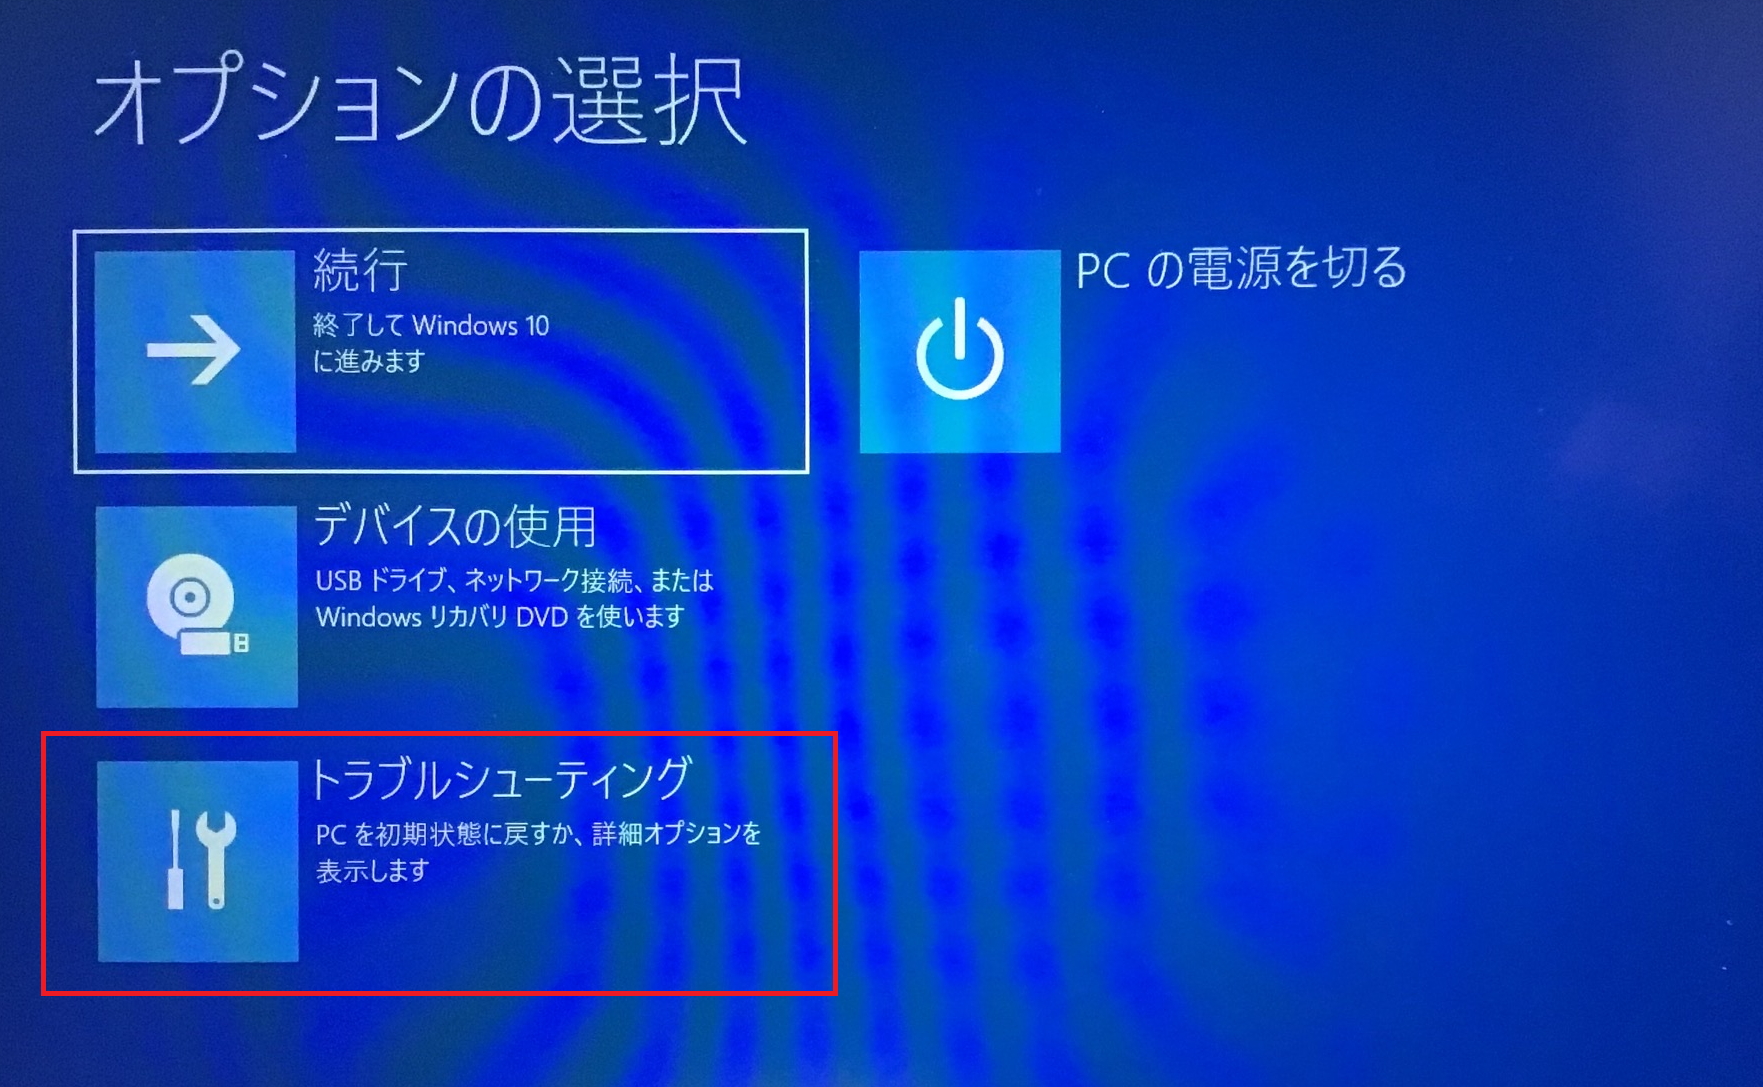 Windows:「オプションの選択」画面が表示し「トラブルシューティング」を選択